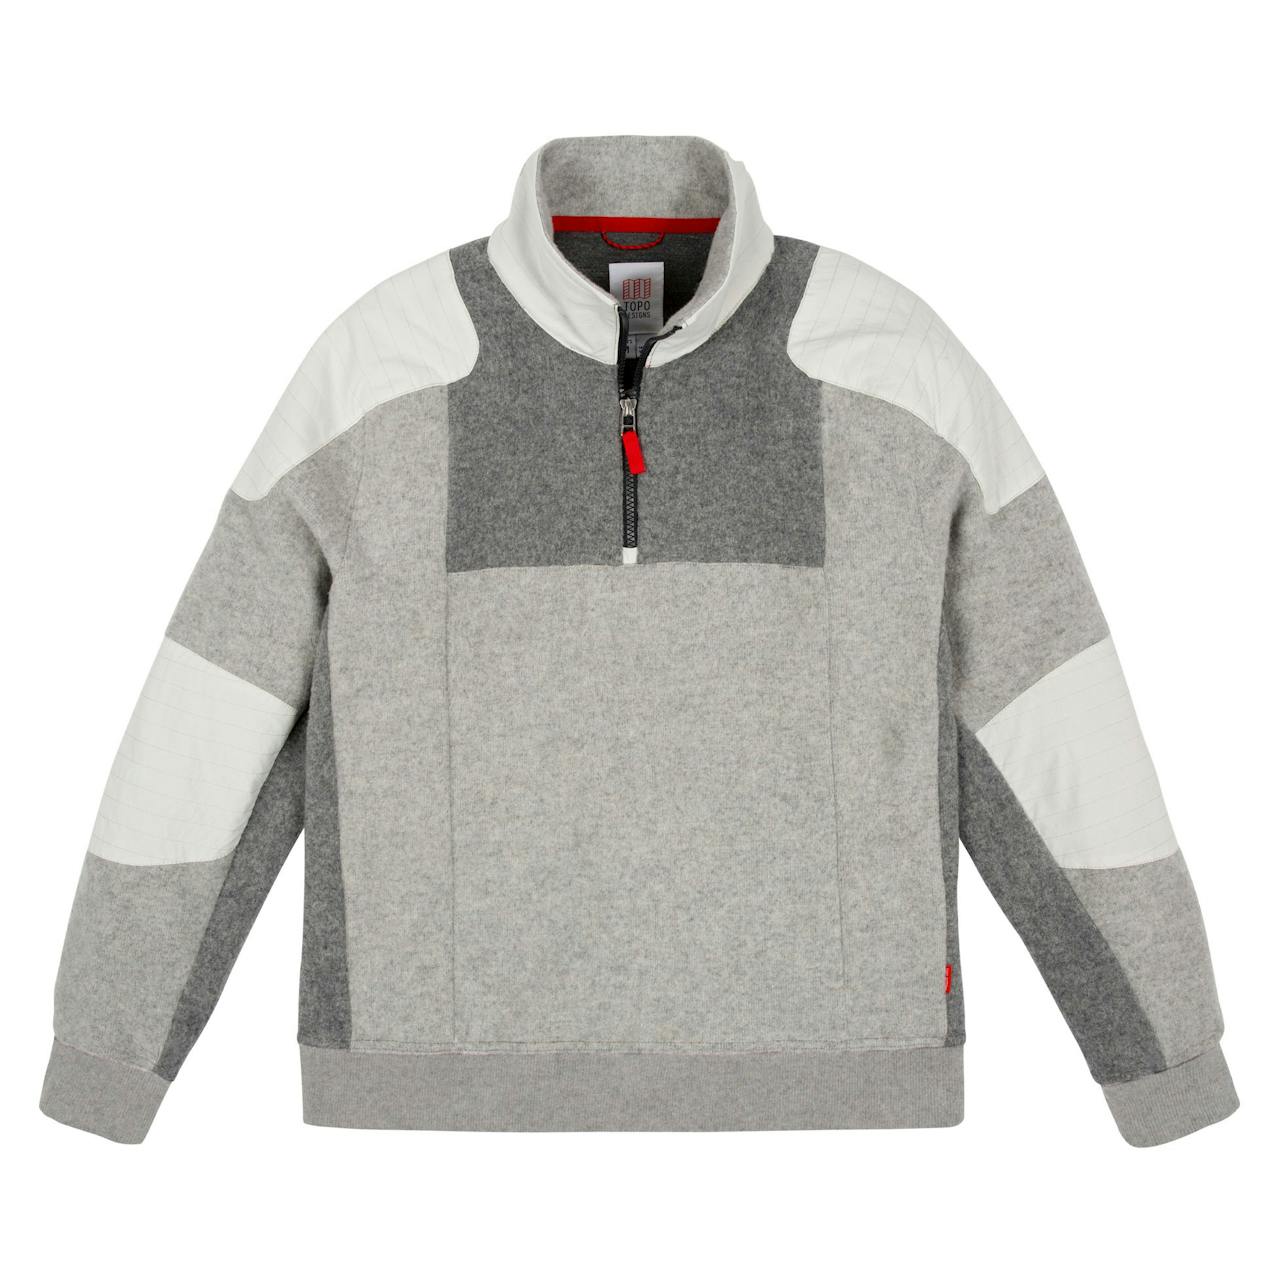 Topo Designs Global 1/4 Zip Sweater